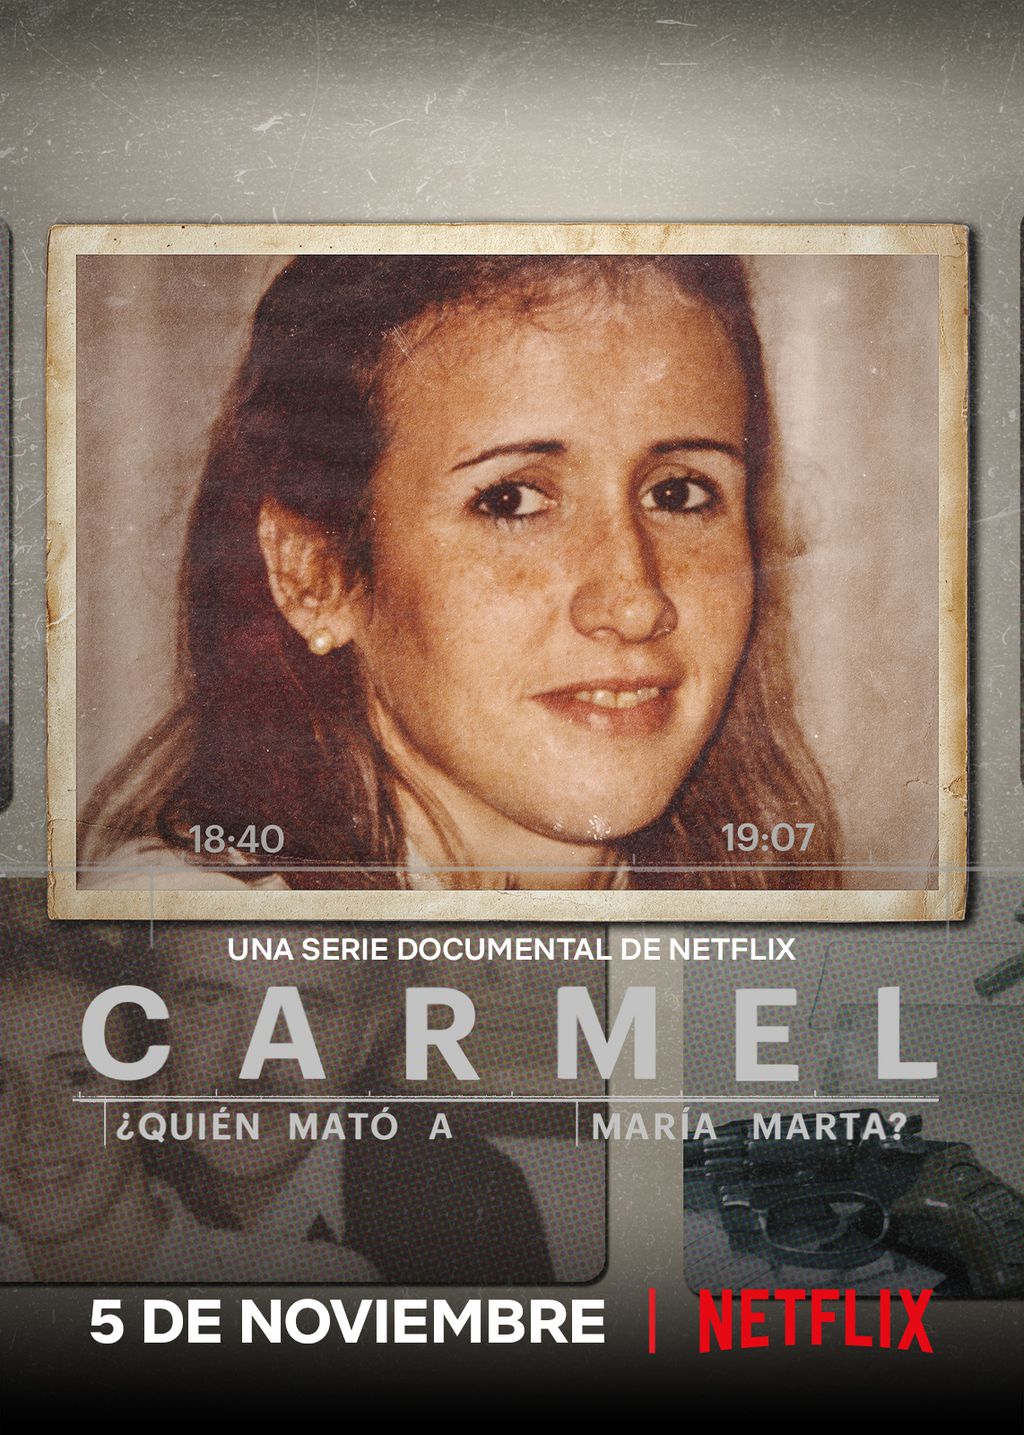 Crítica | Quem Matou María Marta? traz a agonia de morte misteriosa na Argentina